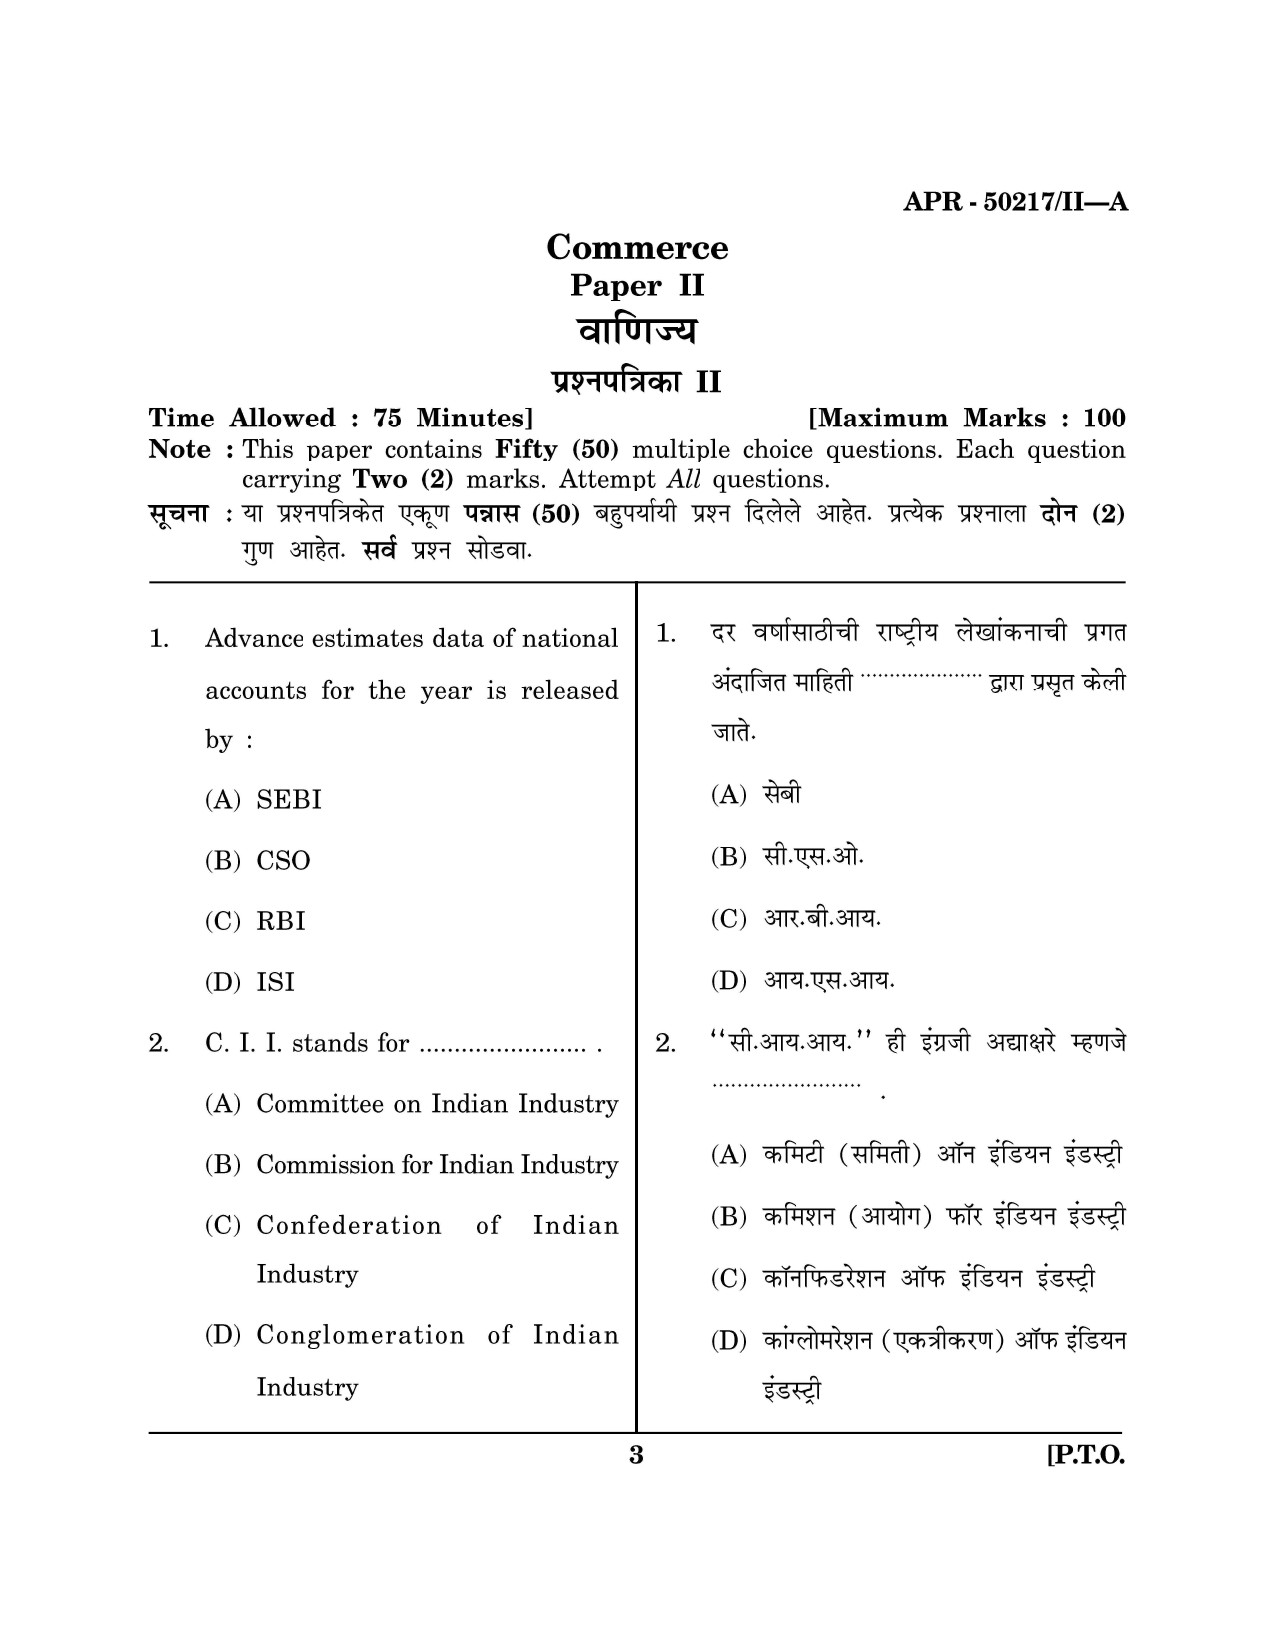 Maharashtra SET Commerce Question Paper II April 2017 2